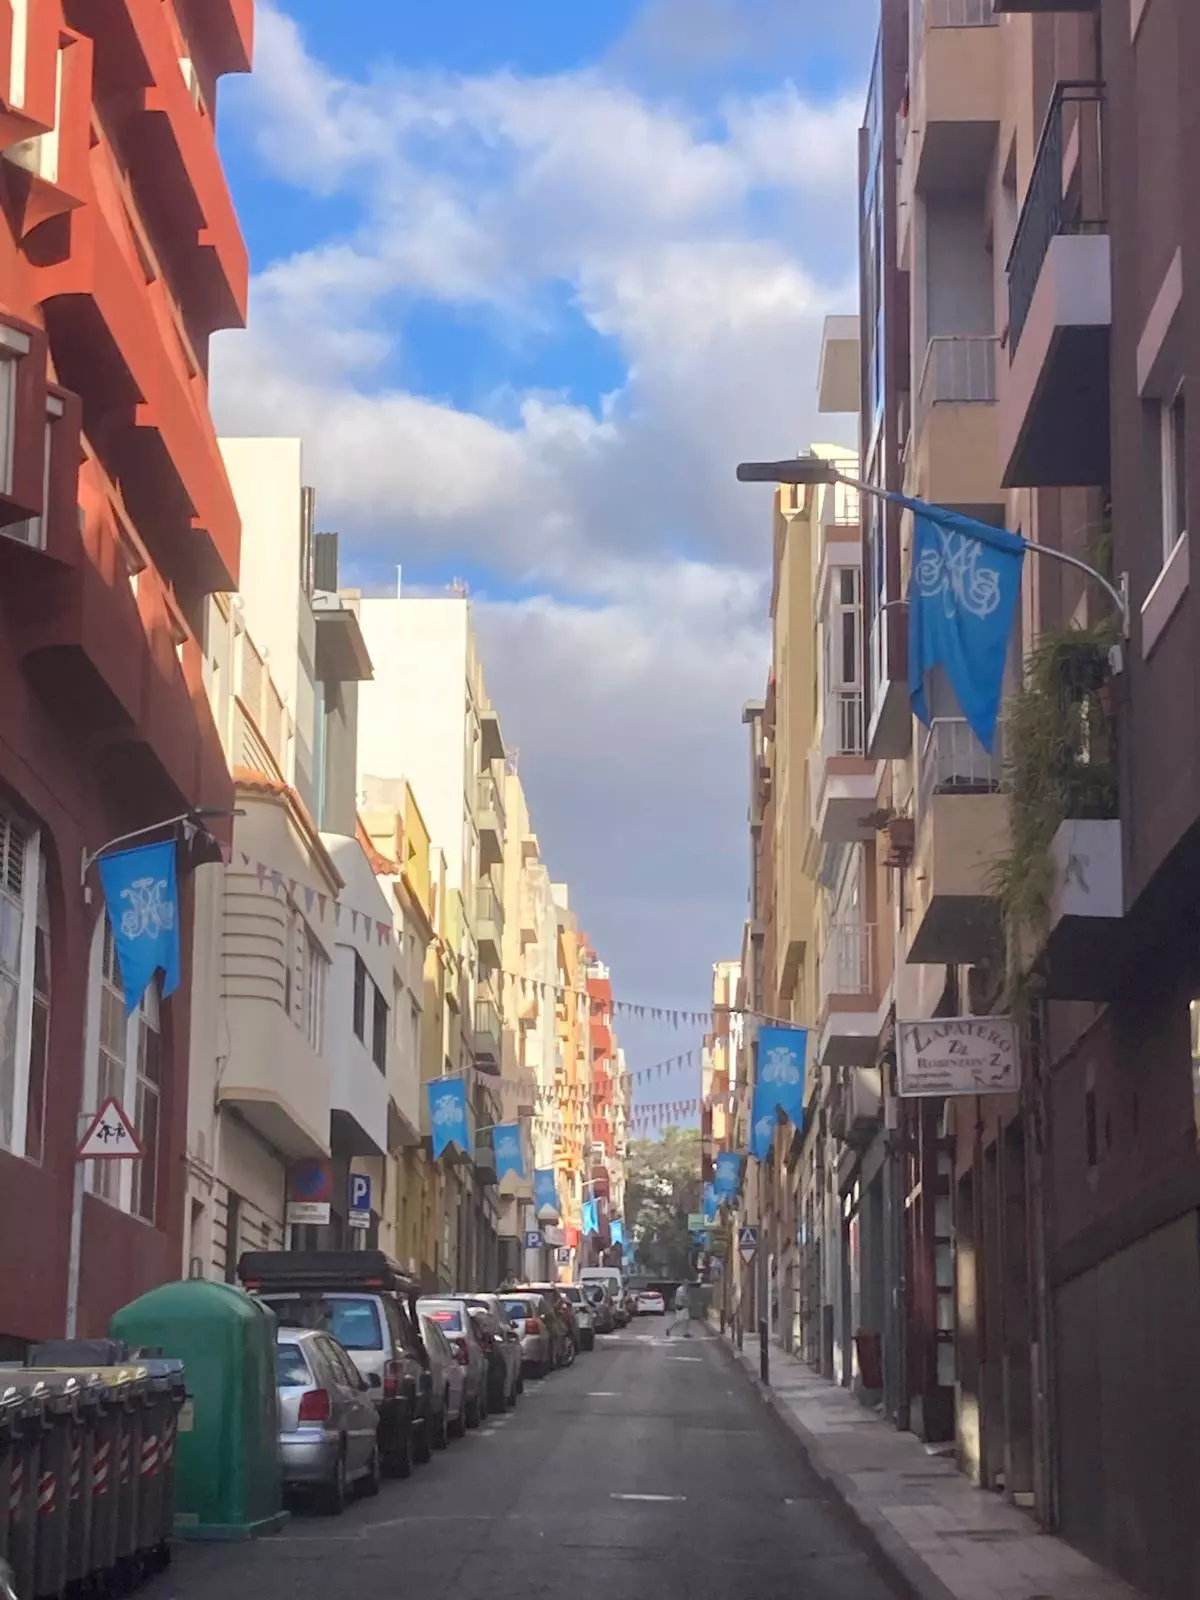 El barrio de Duggi amanece engalanado con banderolas azules por la festividad de María Auxiliadora